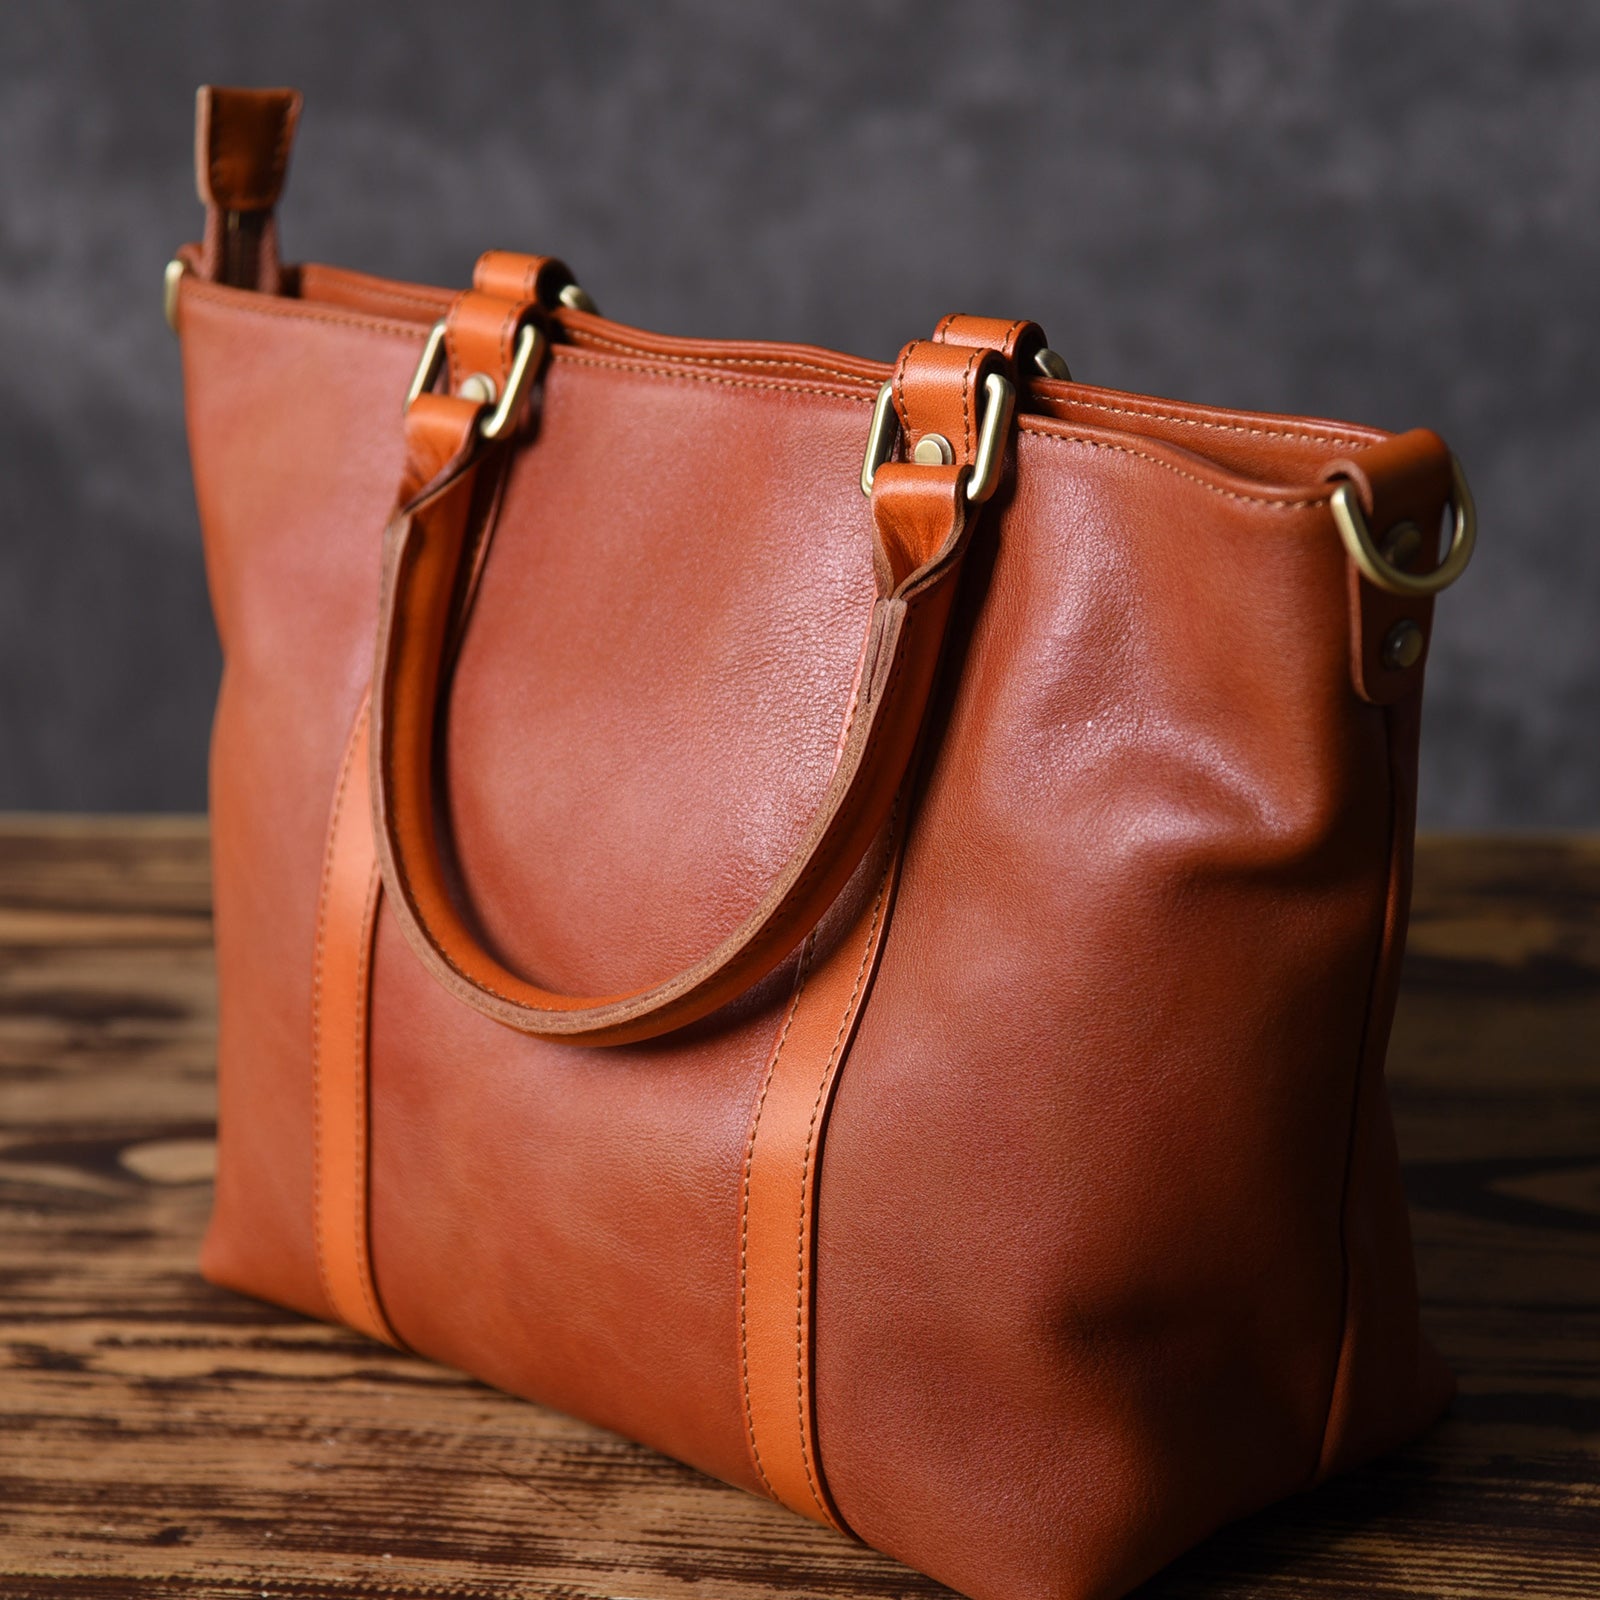 Brown Leather Women Handbag Work Bag Shoulder Bag For Women 2 2048x2048 ?v=1534562954